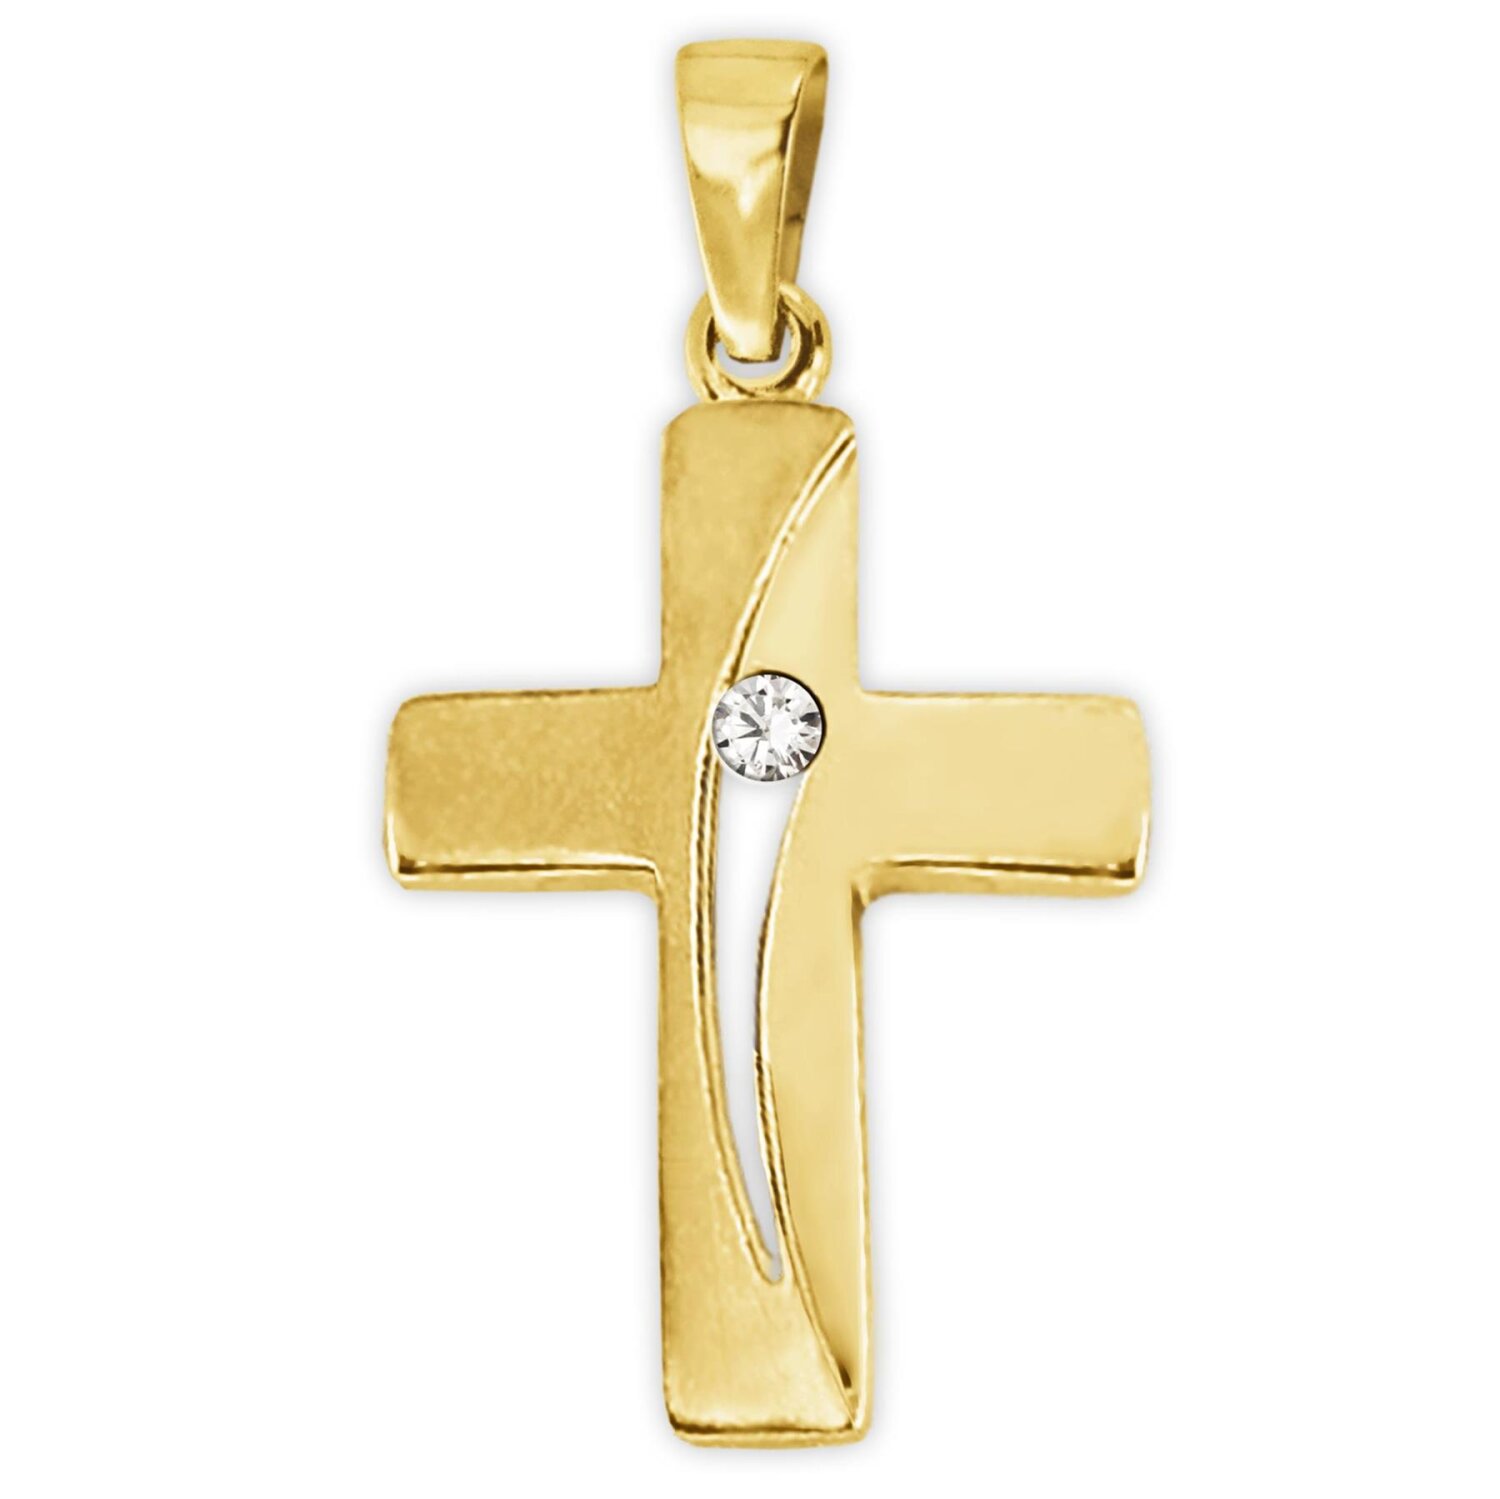 Goldenes  Kreuz 16 mm Bogen offen mit Zirkonia mittig teilmatt 333 Gold